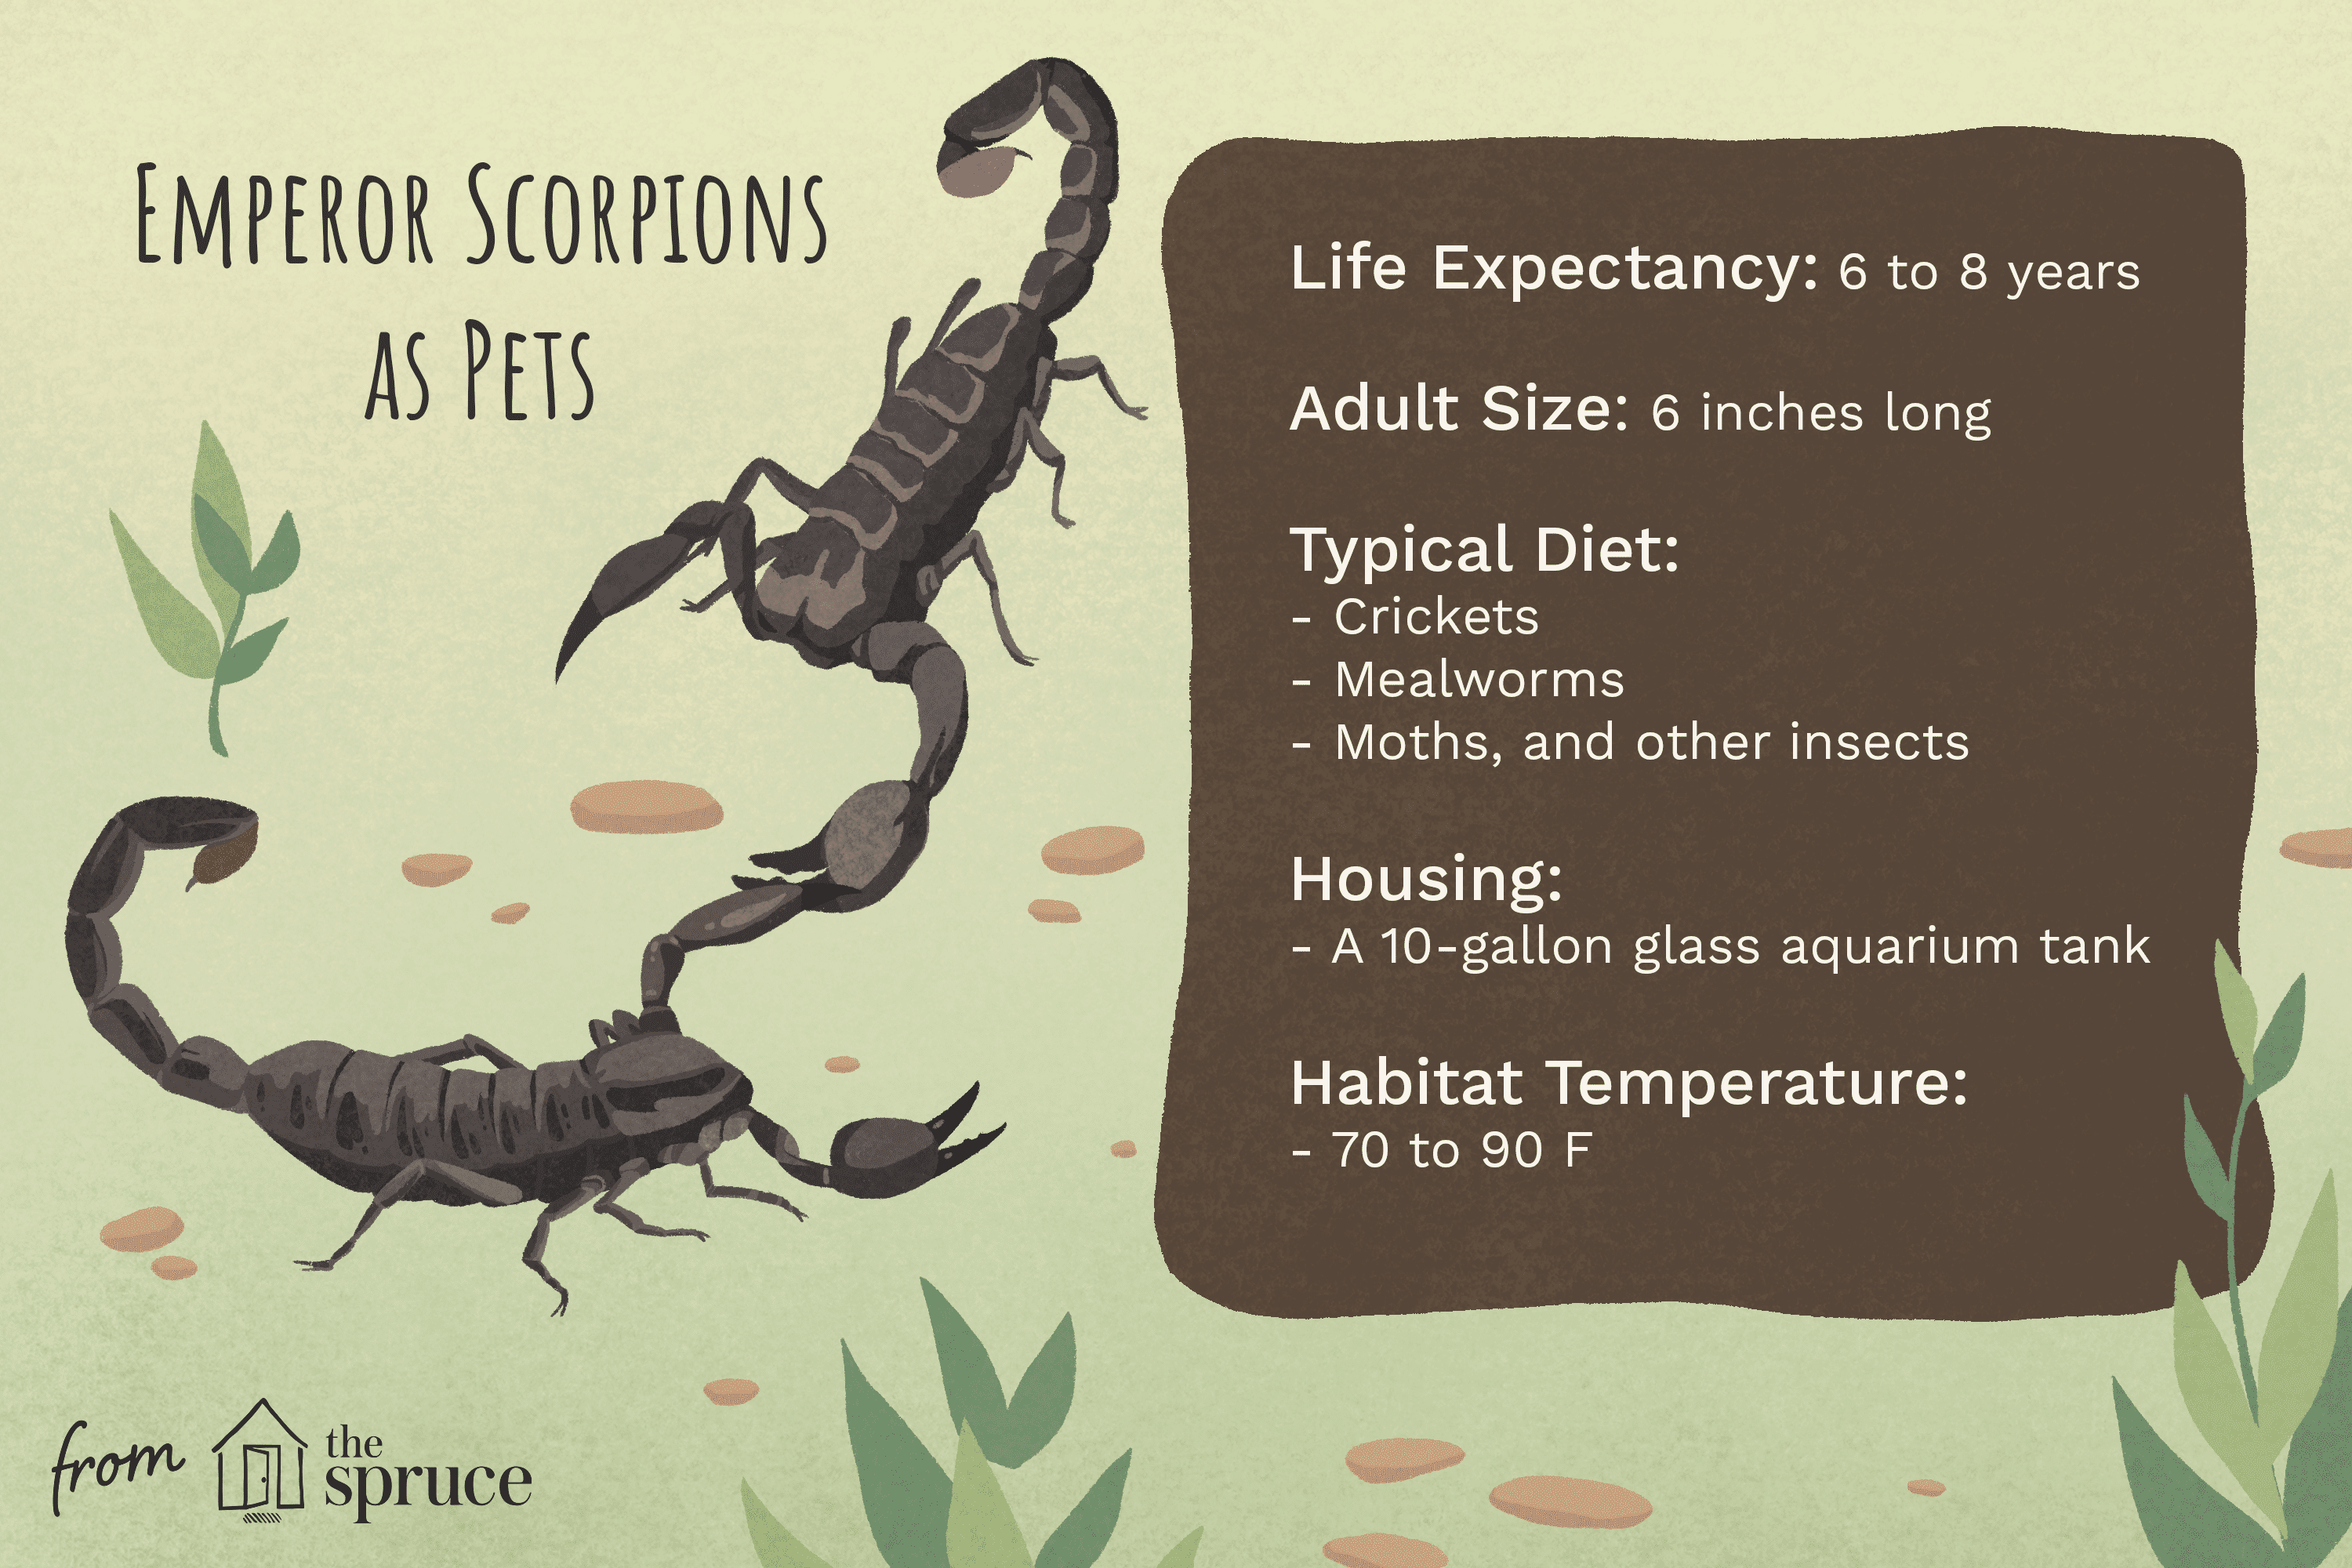 Devez-vous garder un scorpion empereur comme animal de compagnie ?